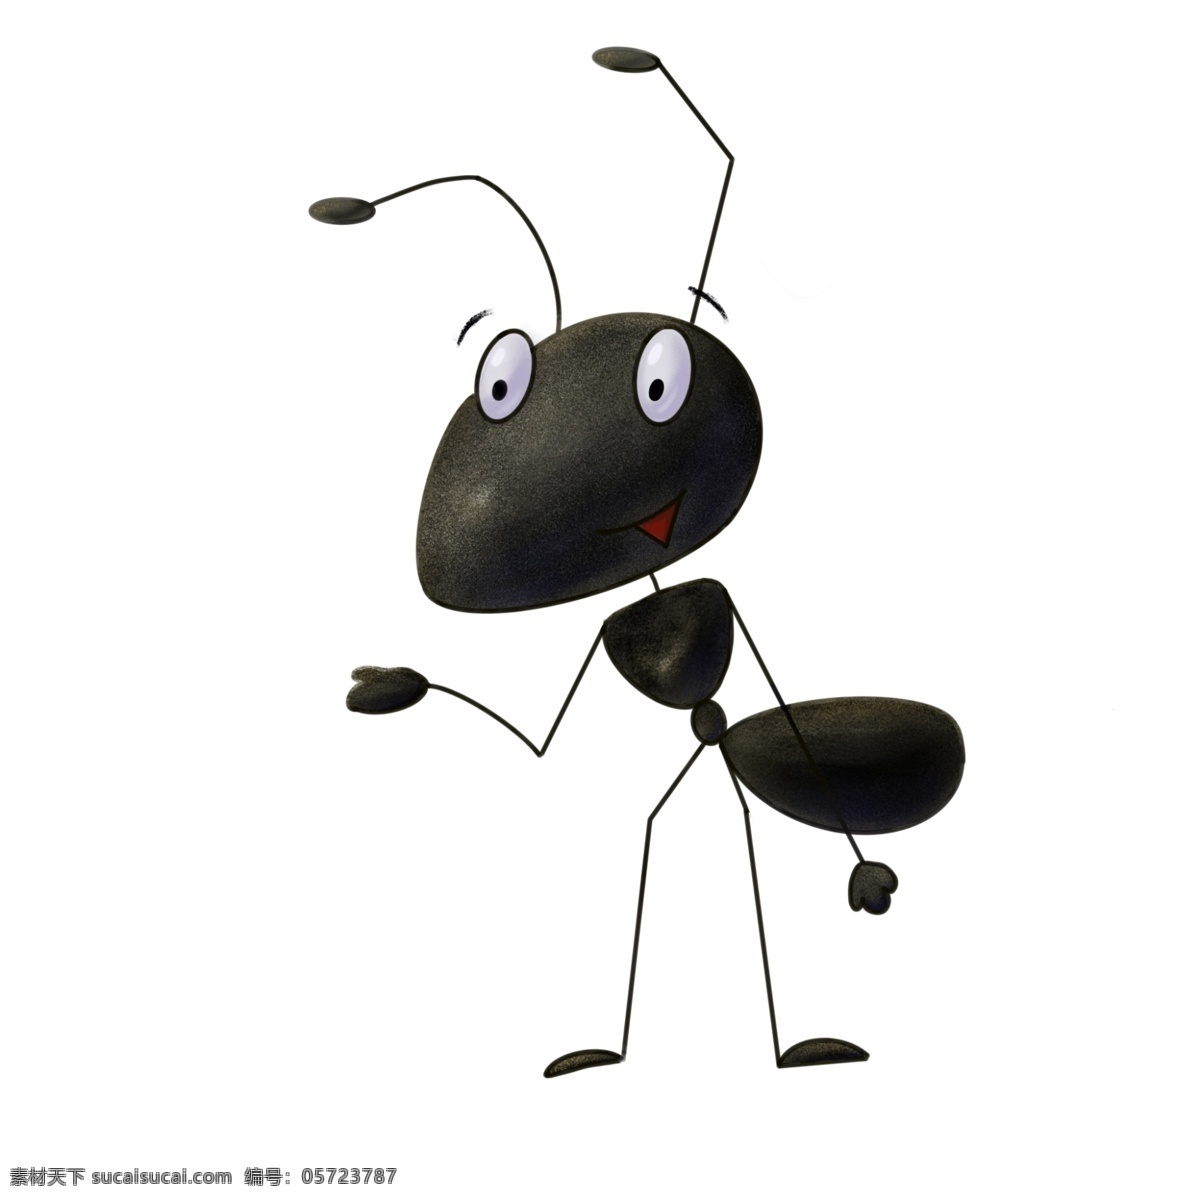 卡通蚂蚁 卡通 蚂蚁 手绘 动漫 动物 元素 形象 插画 绘本 儿童 动漫动画